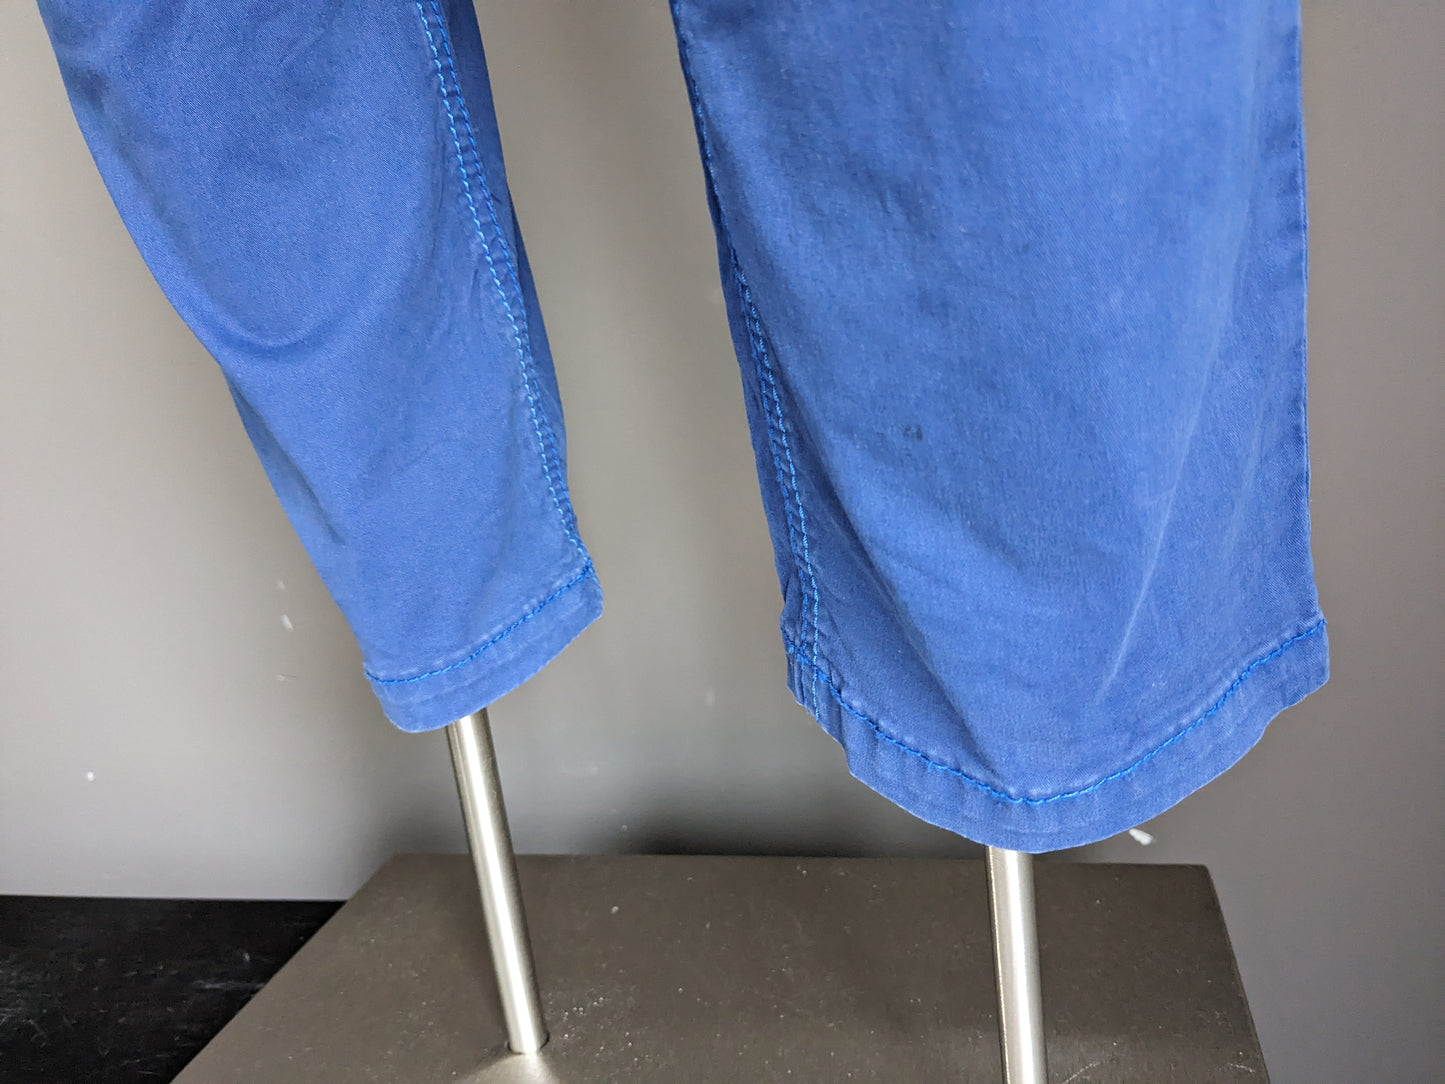 Pantalon / pantalon Bartlett. Bleu. Taille 24 (48) / m